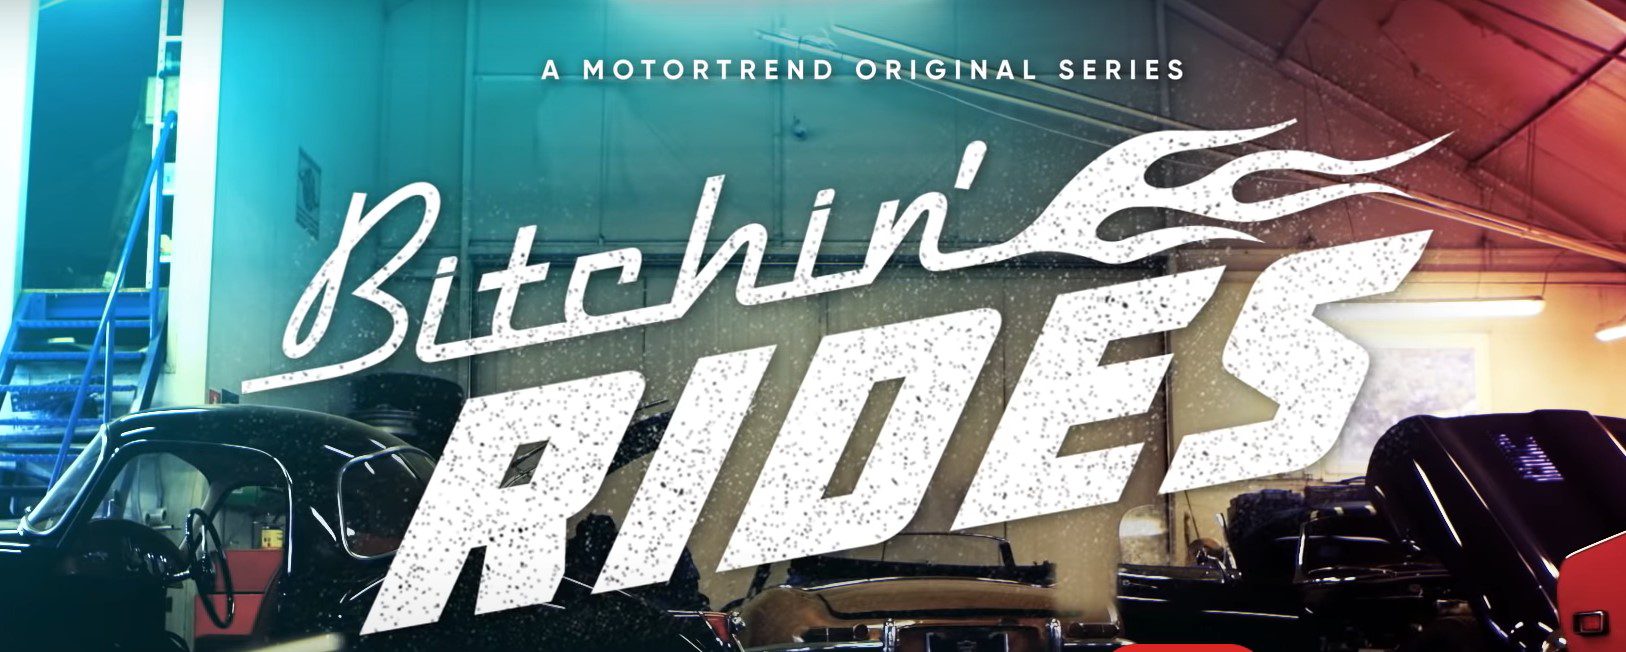 Bitchin Rides Opening title